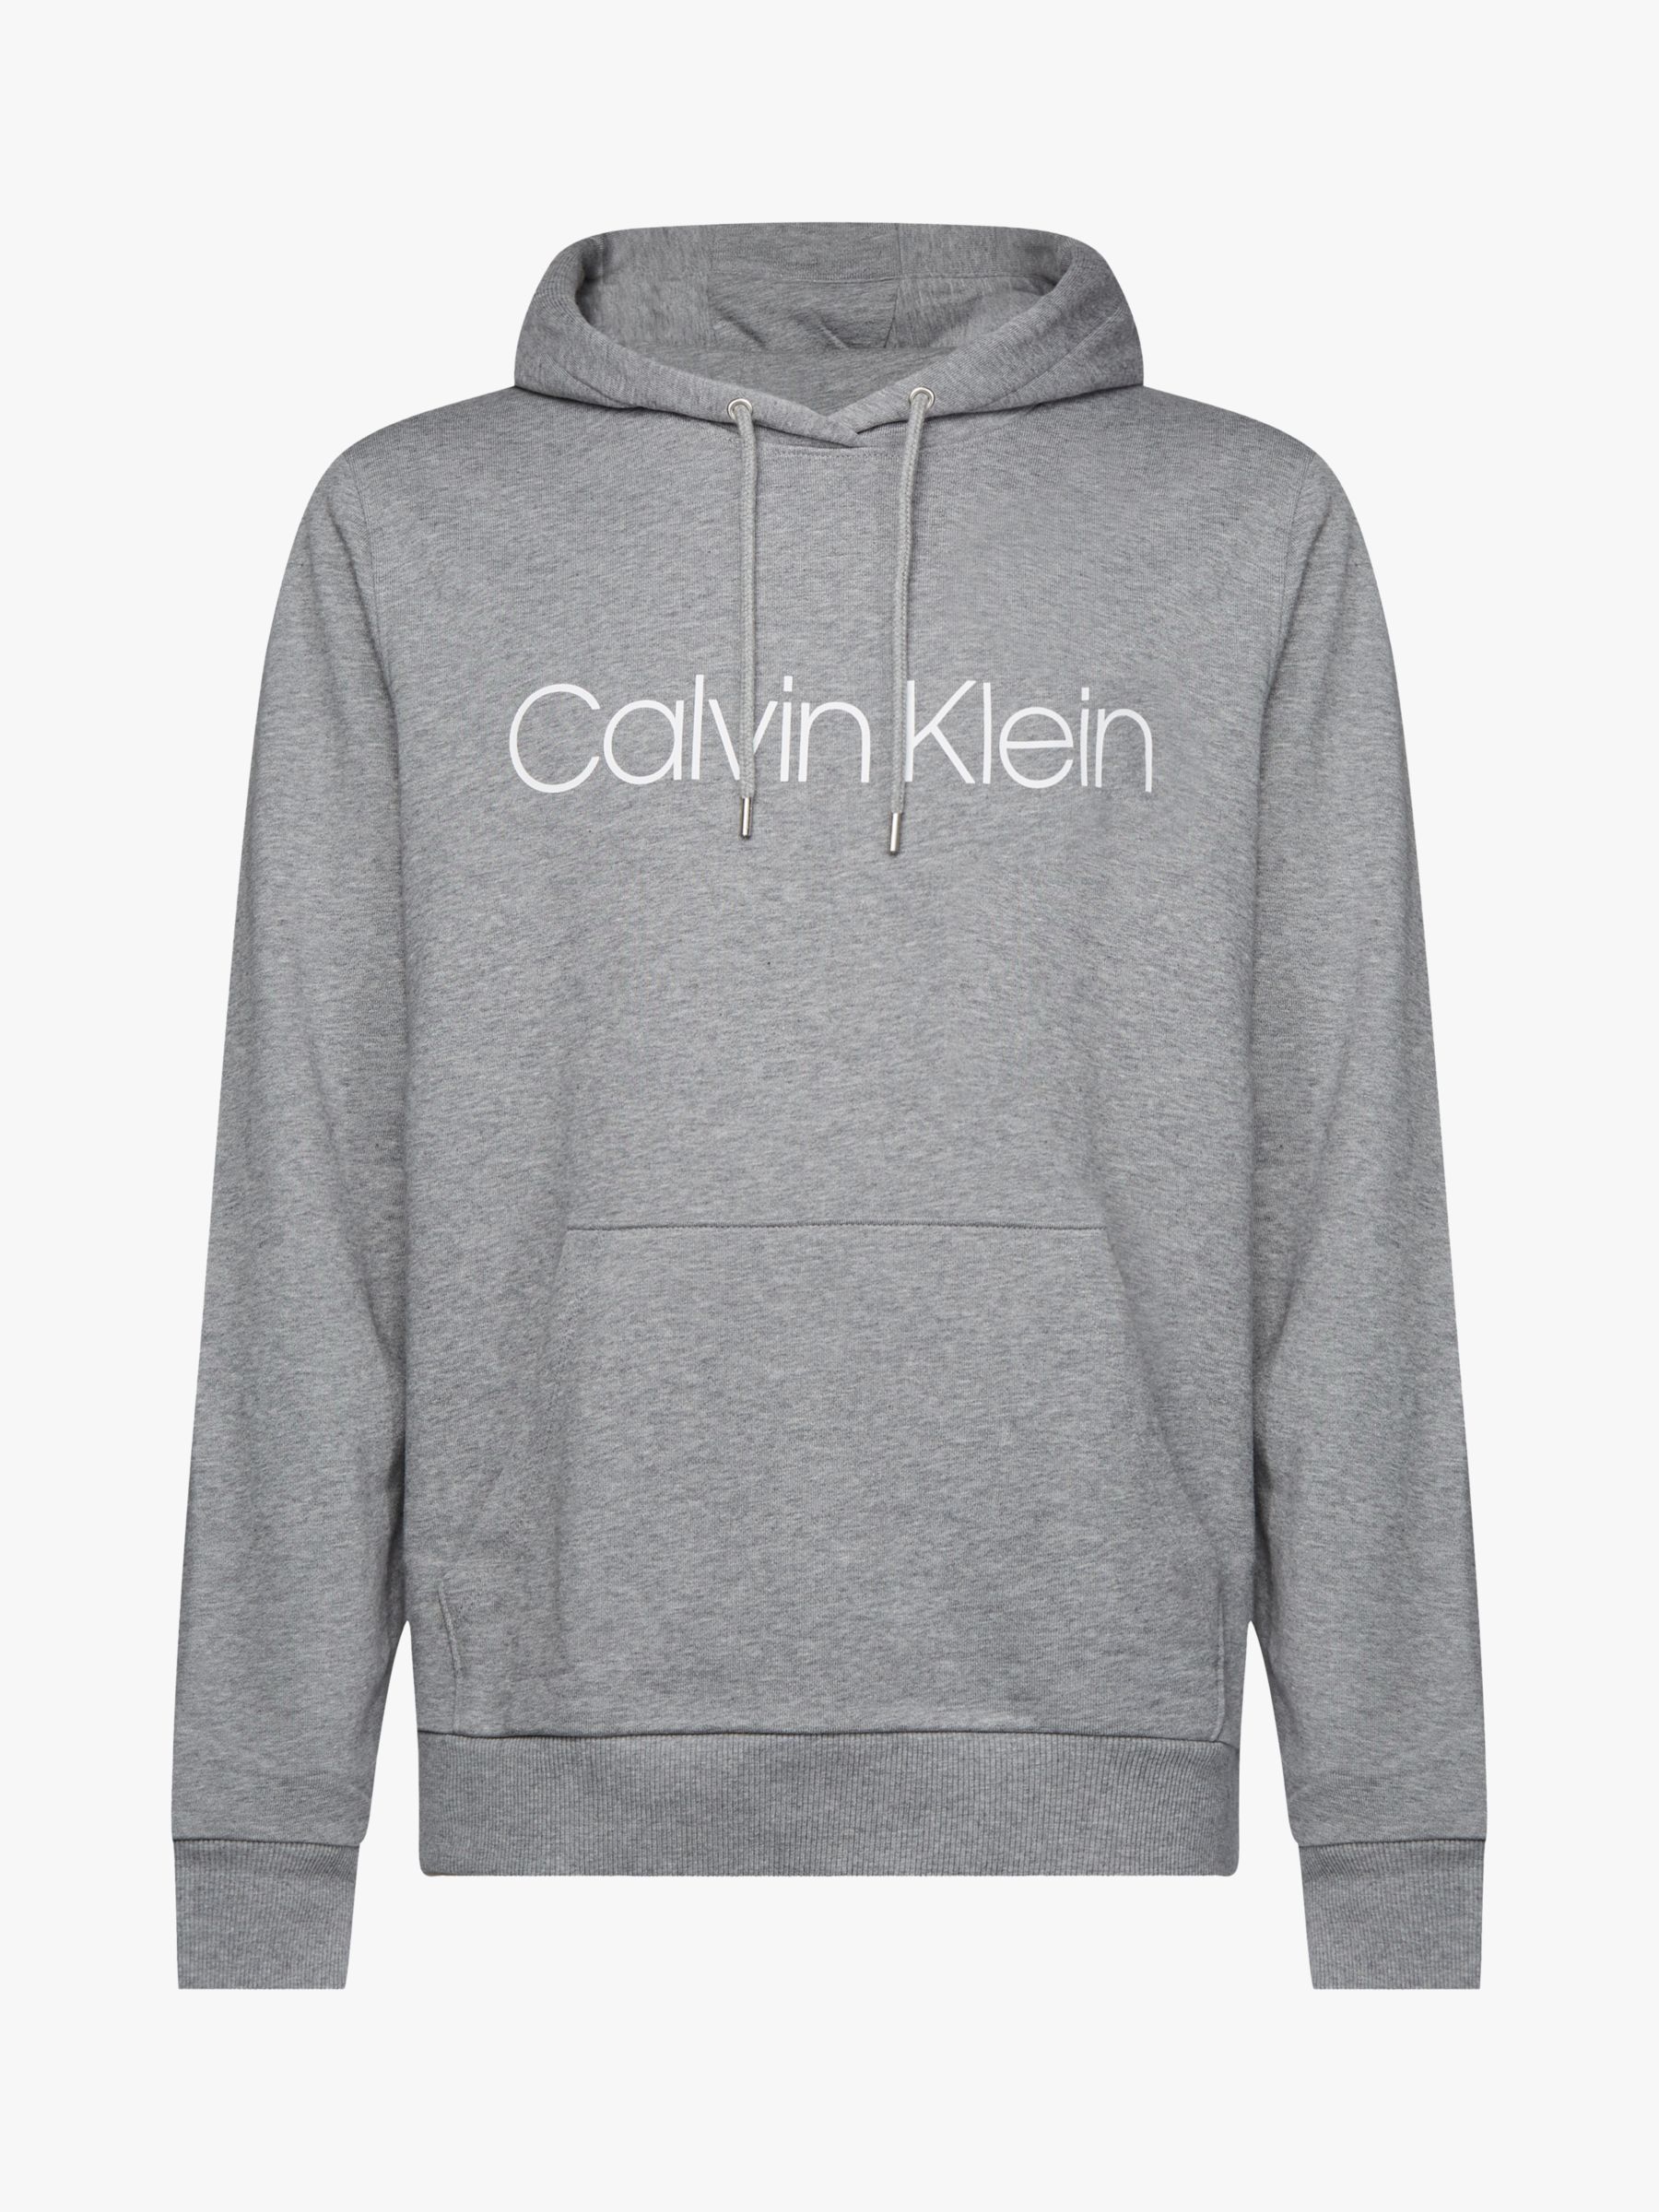 Calvin Klein Organic Cotton Logo Hoodie, Mid Grey Heather at John Lewis